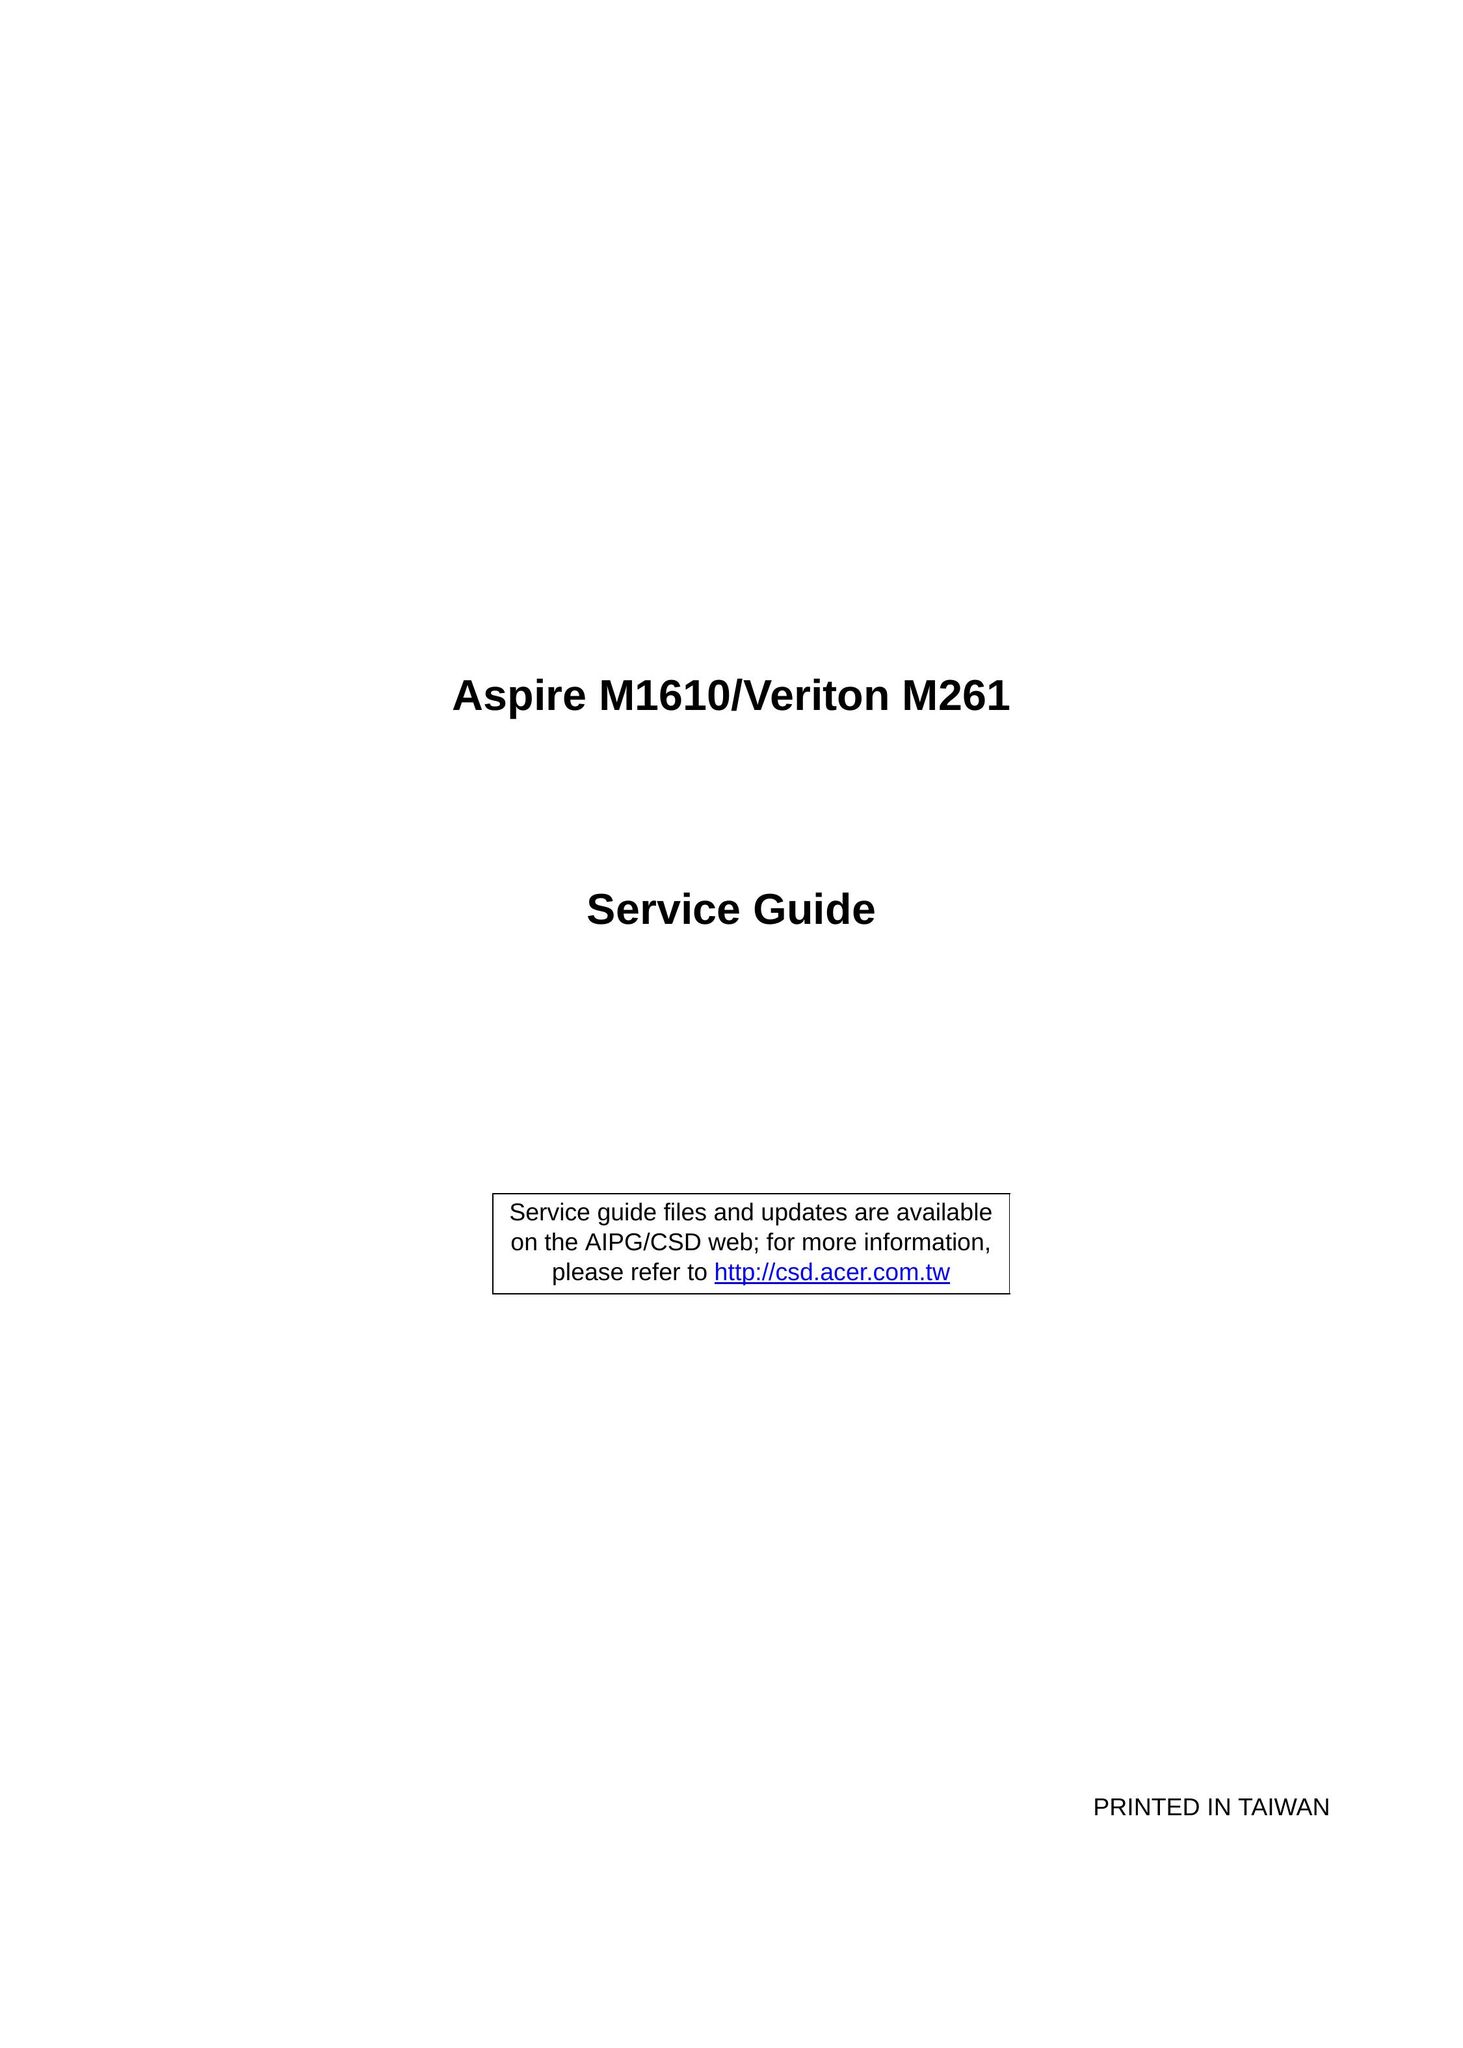 Aspire Digital M261 Computer Hardware User Manual